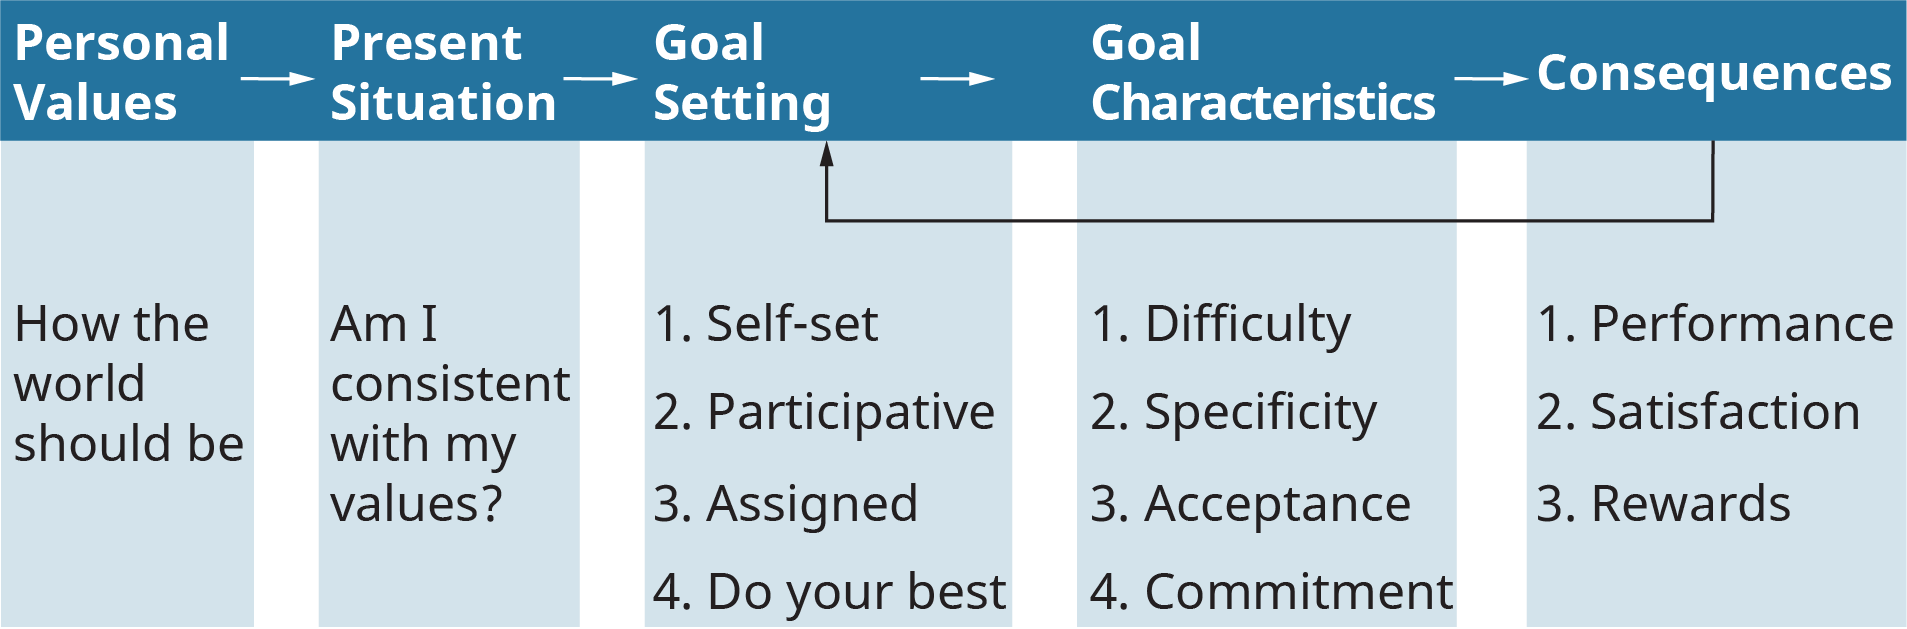 Una ilustración muestra el proceso de establecimiento de metas exitosas a través del modelo básico de establecimiento de metas.